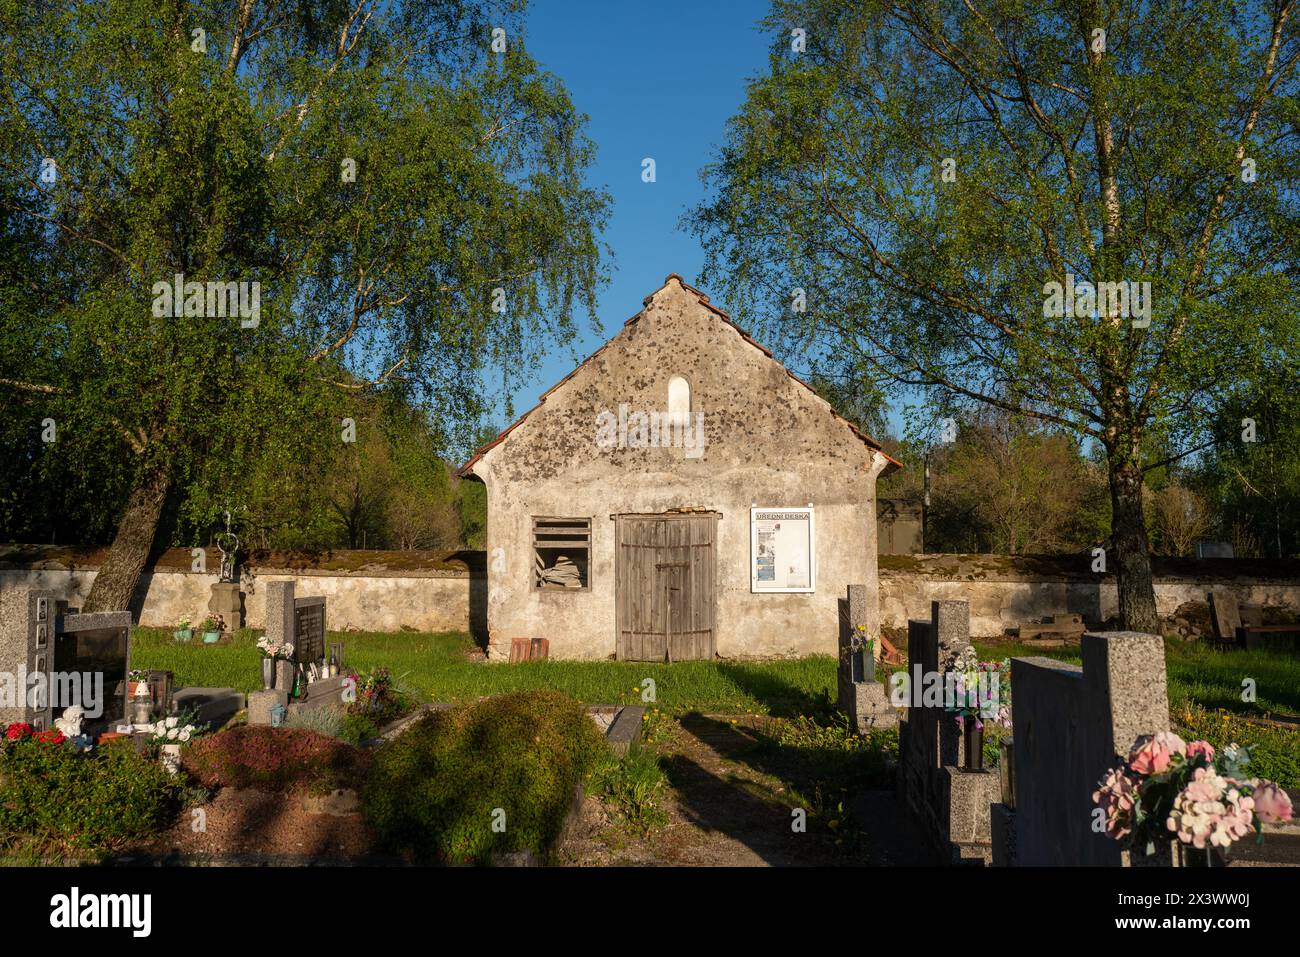 Ungenutzte geschlossene alte Leichenhalle auf einem Landfriedhof in Lodhéřov (Riegerschlag), Tschechien. Gräber stehen vorne. Stockfoto